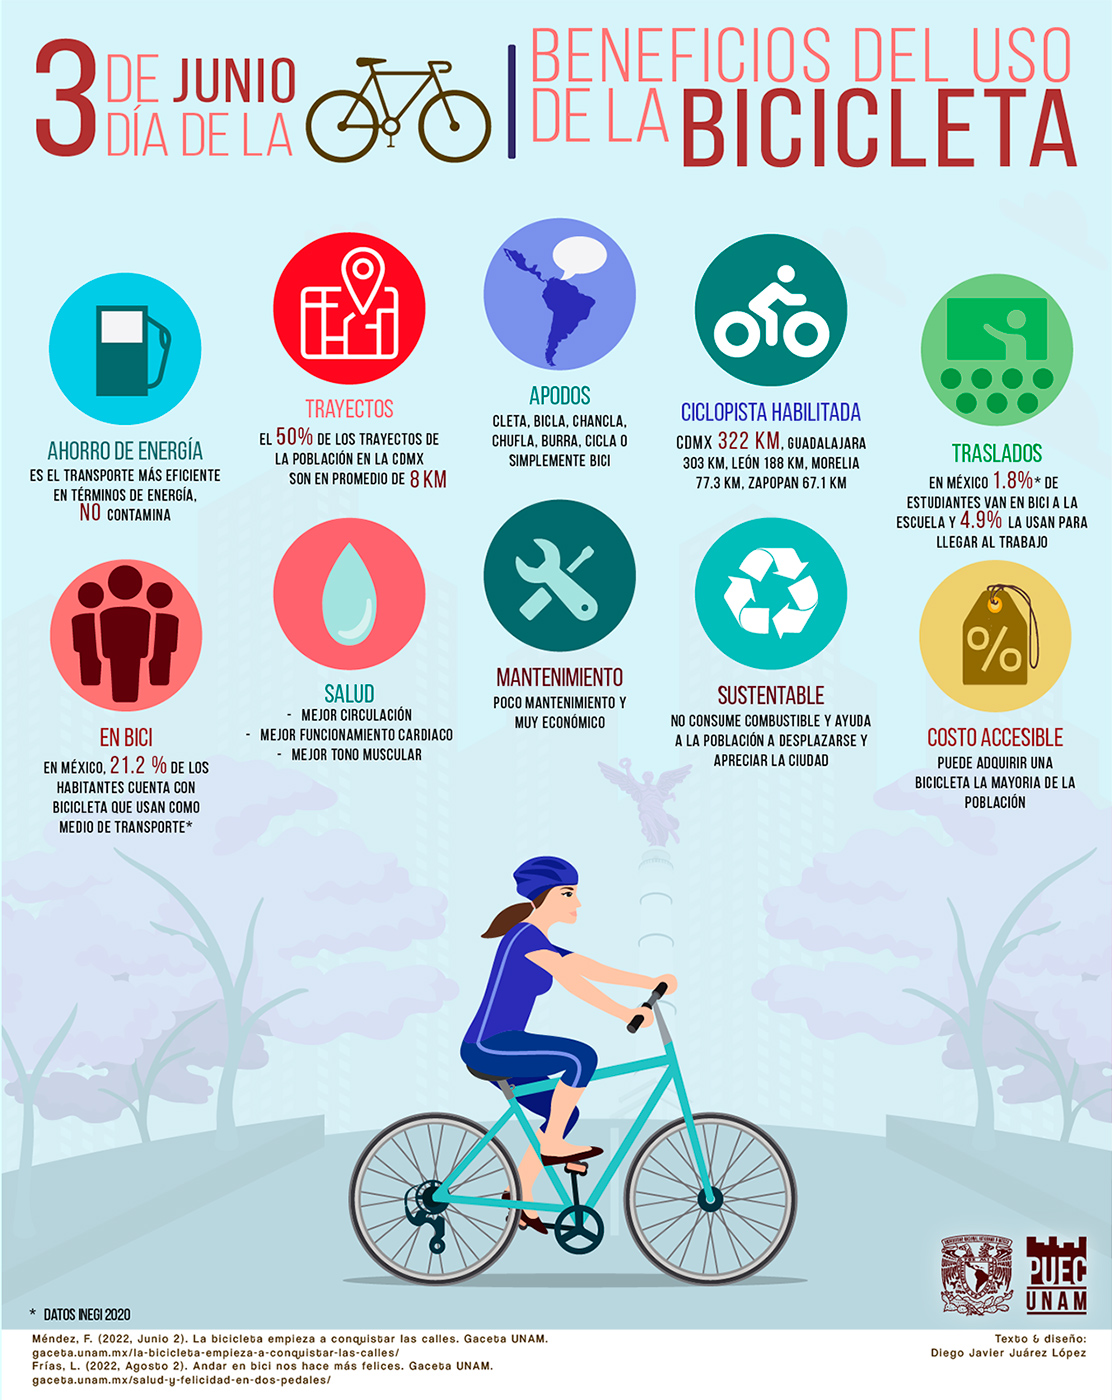 Beneficios del uso de la bicicleta